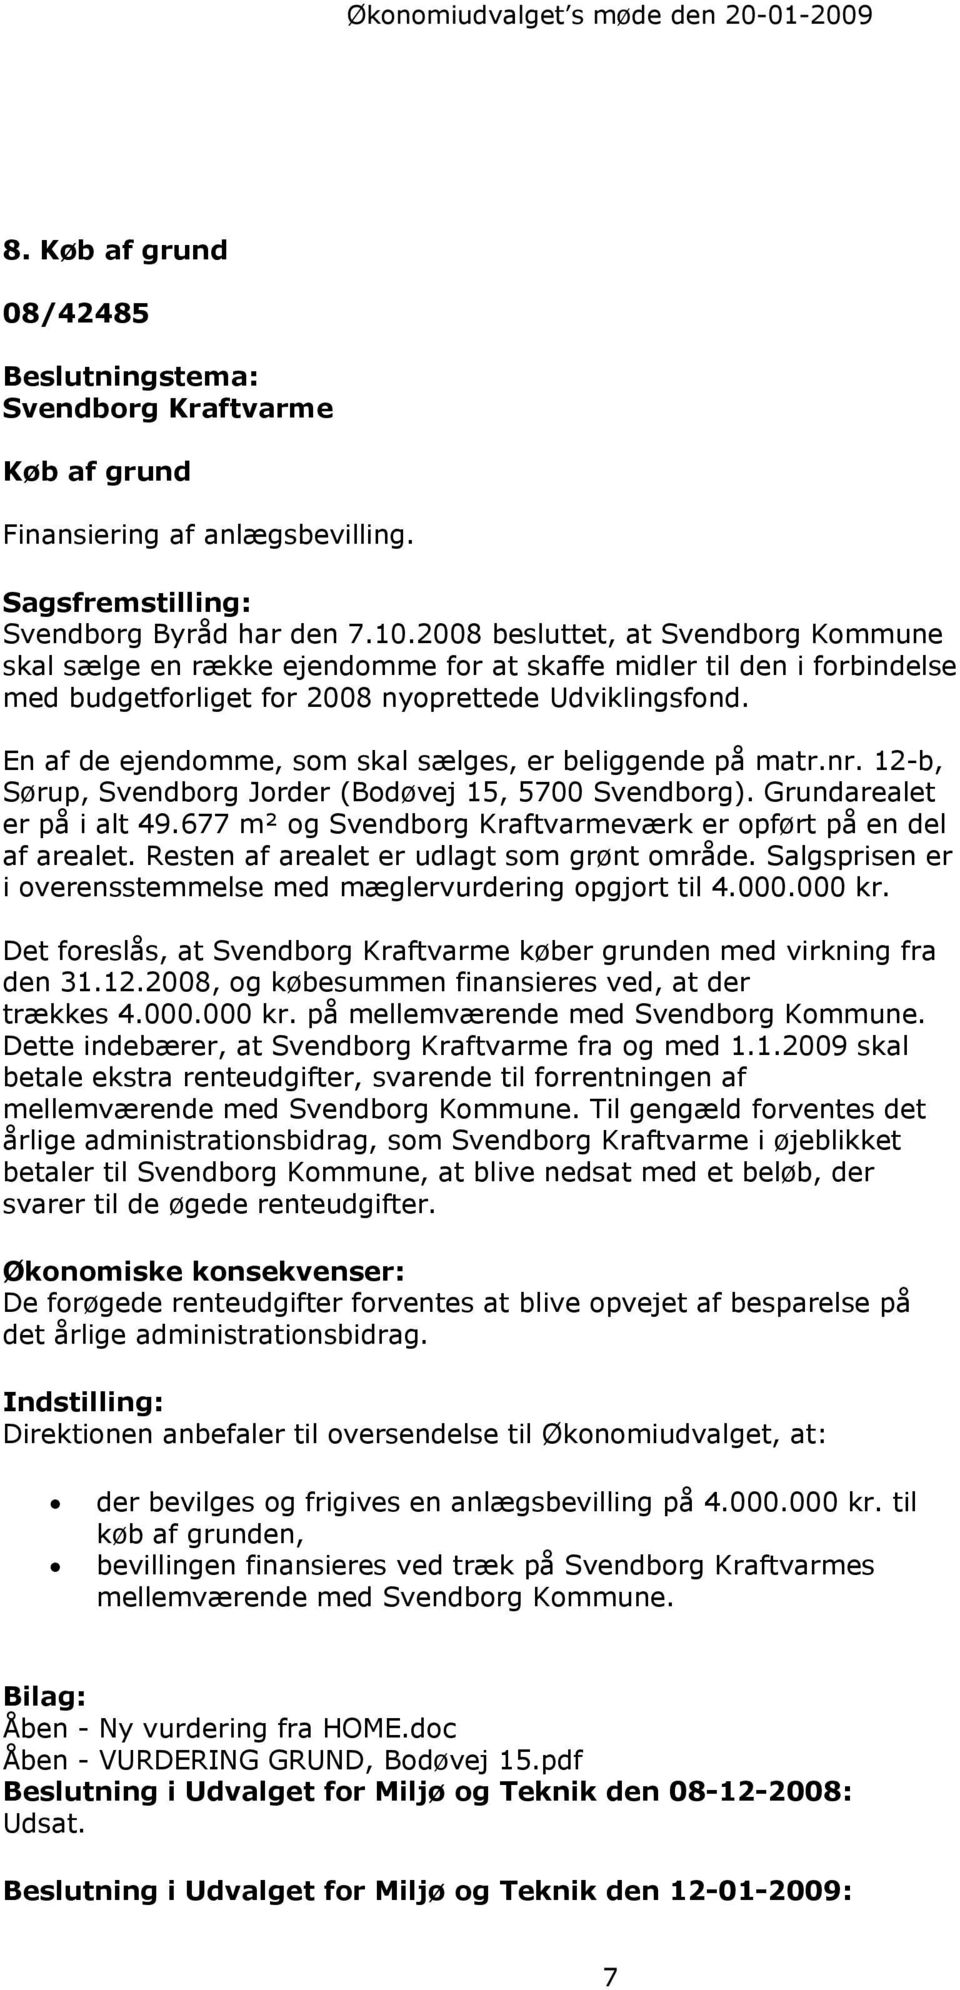 En af de ejendomme, som skal sælges, er beliggende på matr.nr. 12-b, Sørup, Svendborg Jorder (Bodøvej 15, 5700 Svendborg). Grundarealet er på i alt 49.